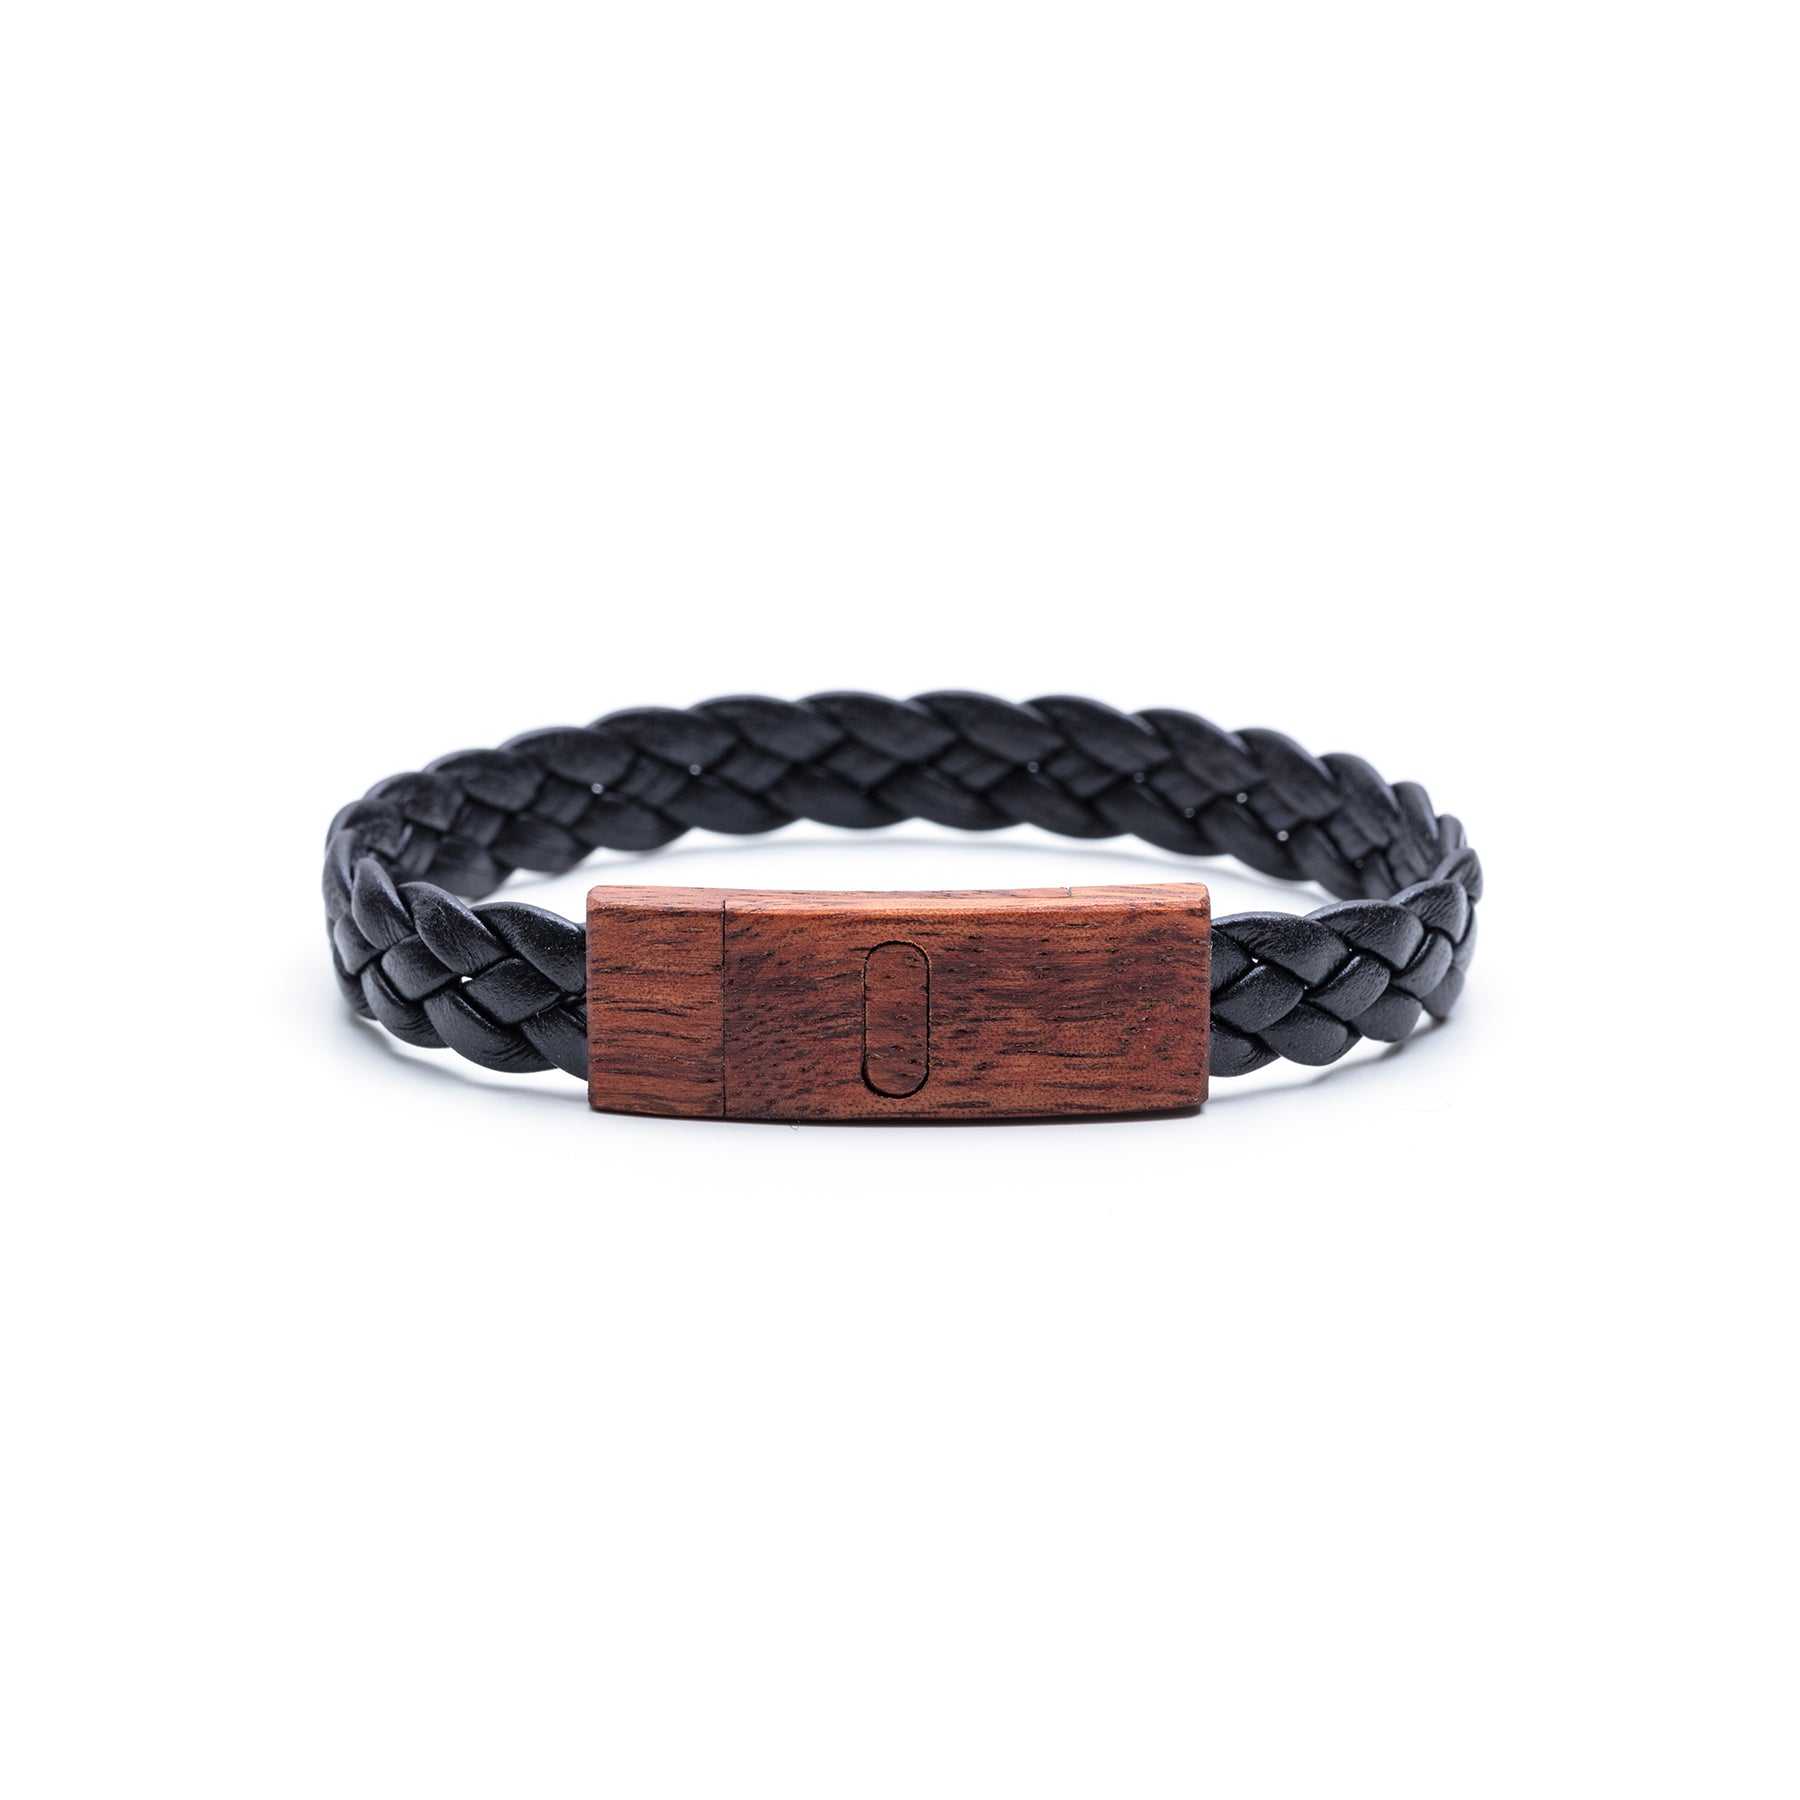 koa bracelet with leather band